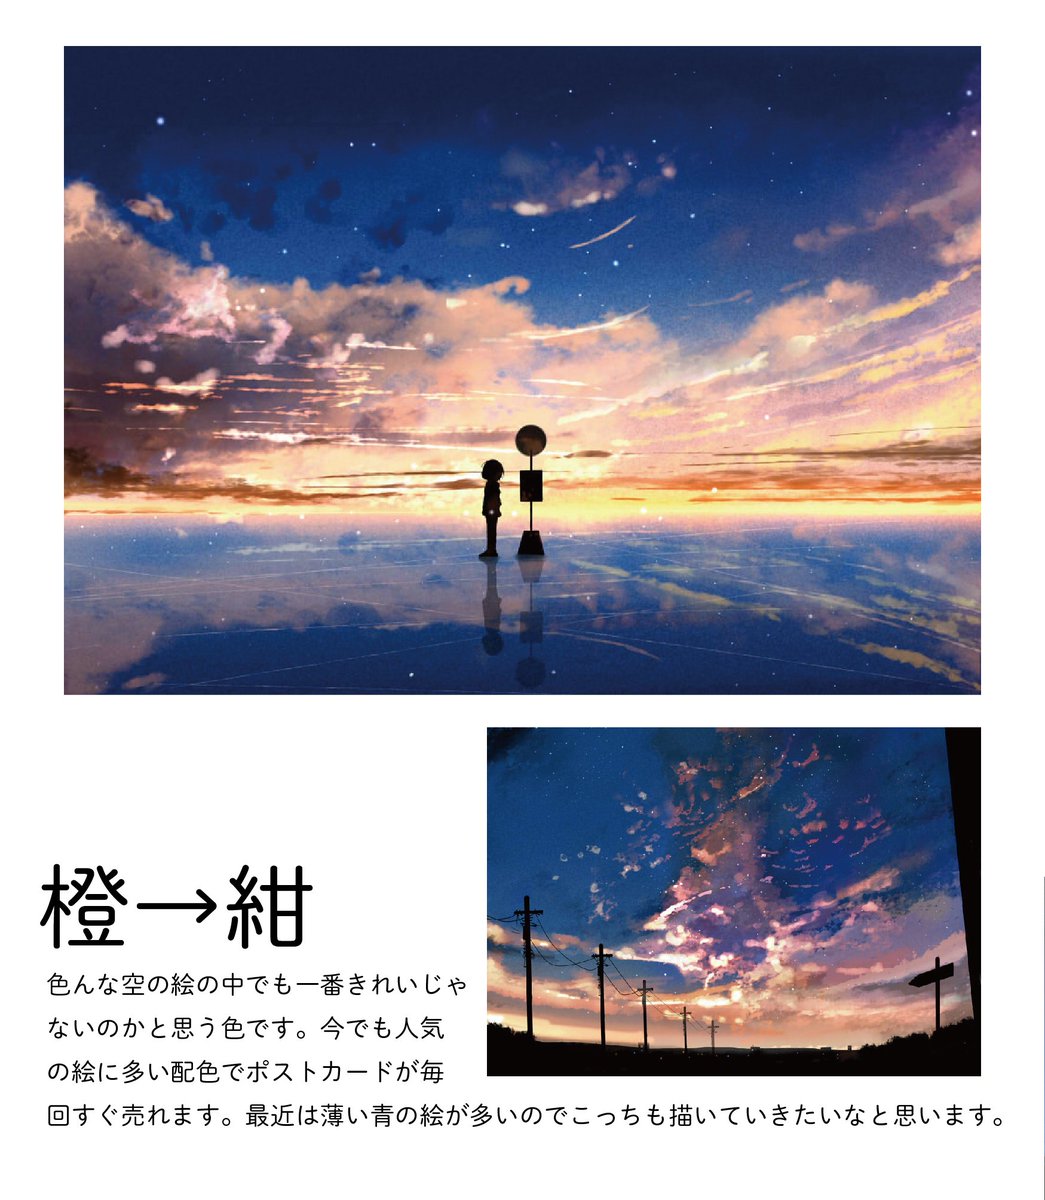 桜田千尋 12月7日星詠み3巻発売 自分の夕焼けのイラストを色ごとに分けてみました 夕焼けイラストは変化する空のグラデーション作るのが楽しいです 好きな空の色 ありますか 今後のグッズなどの参考にします T Co Prlupkct4f Twitter